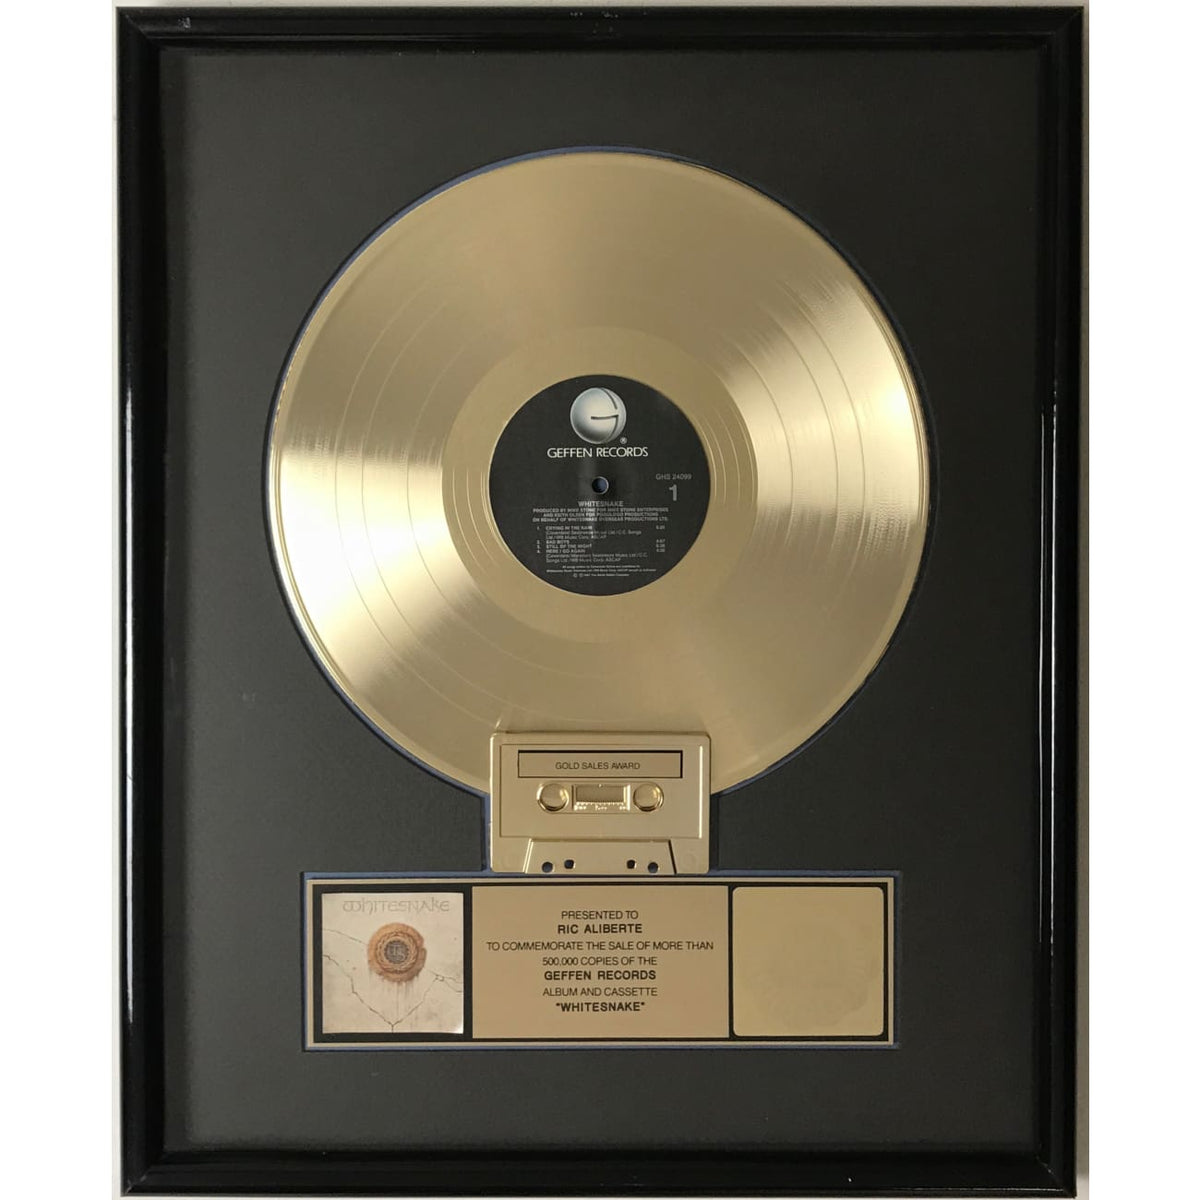 Whitesnake (1987) RIAA Gold Album Award